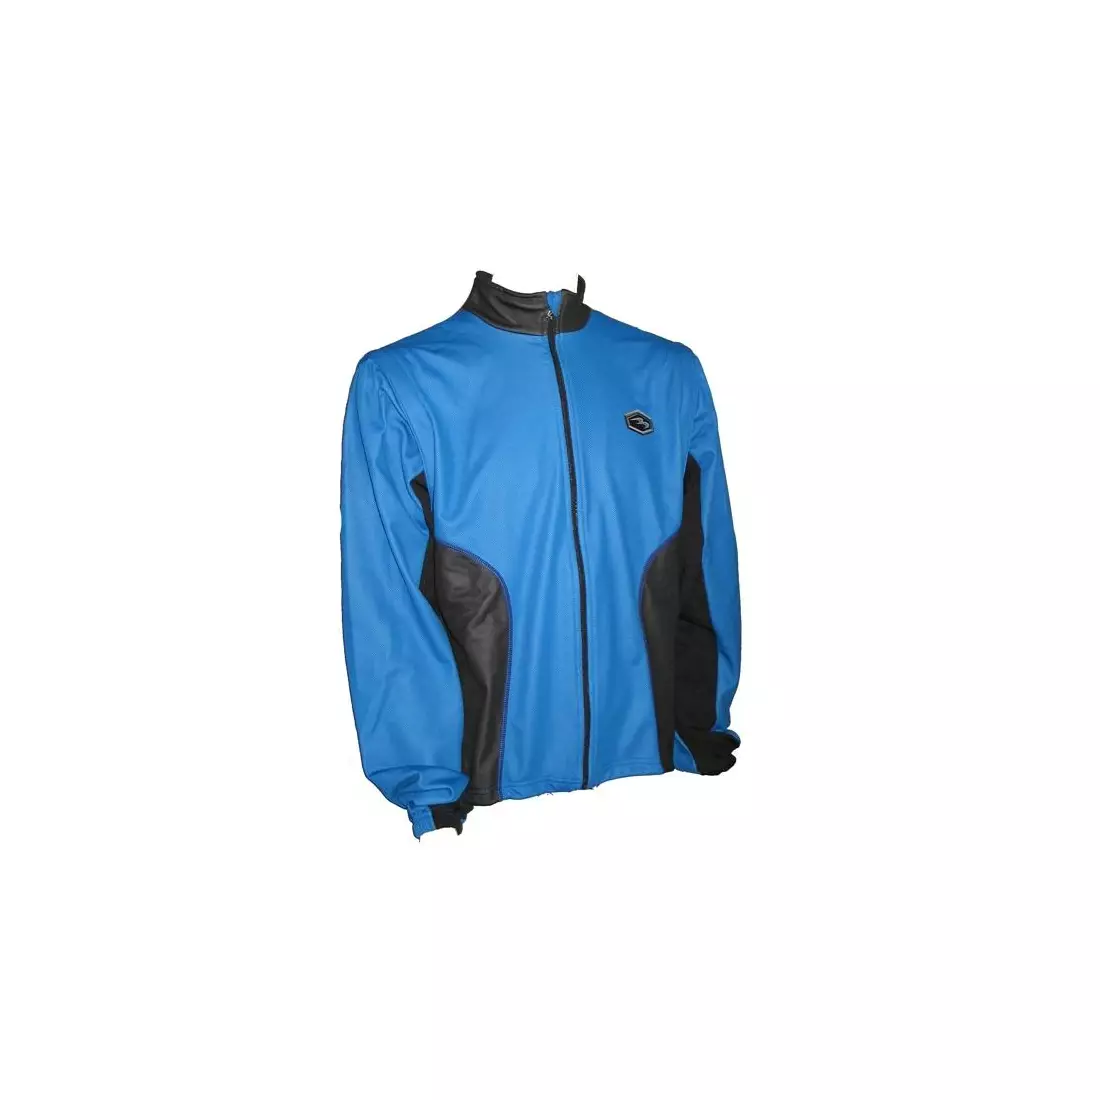 BIEMME SEQUOIA WINDSTOPPER jachetă de iarnă pentru bărbați pentru biciclete, albastră